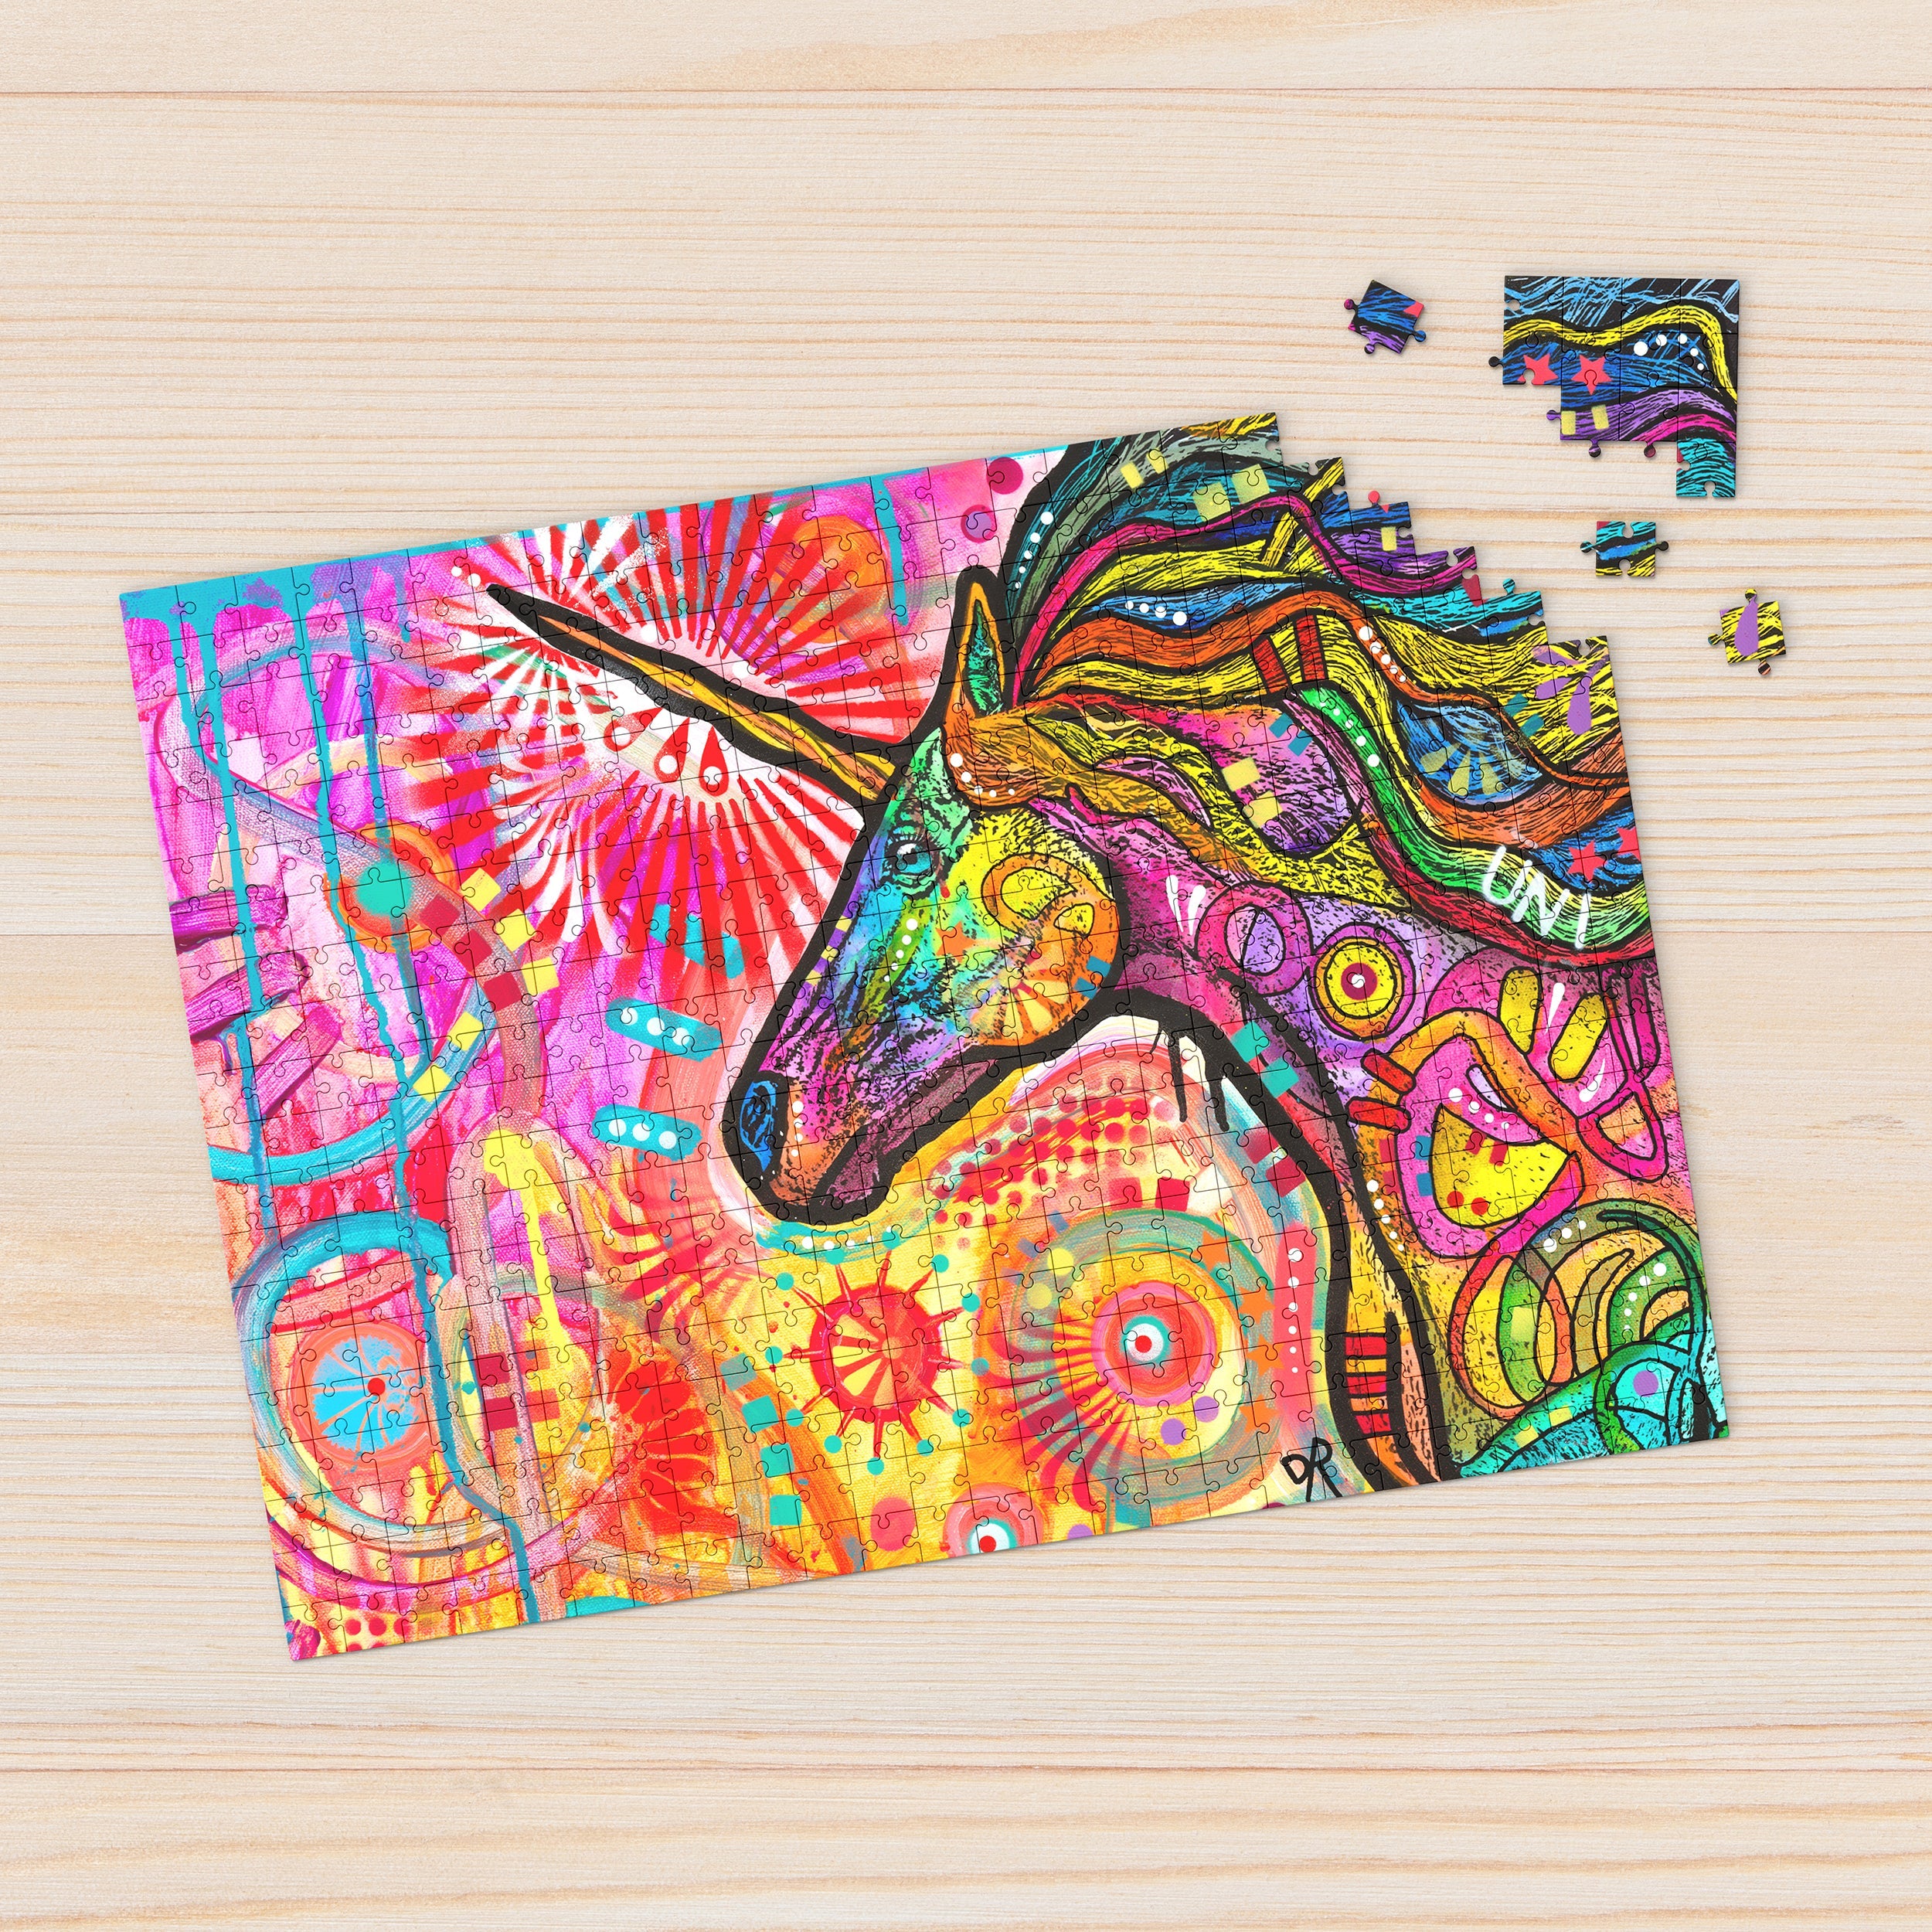 Unicornicopia 1000 Piece - Jigsaw Puzzle